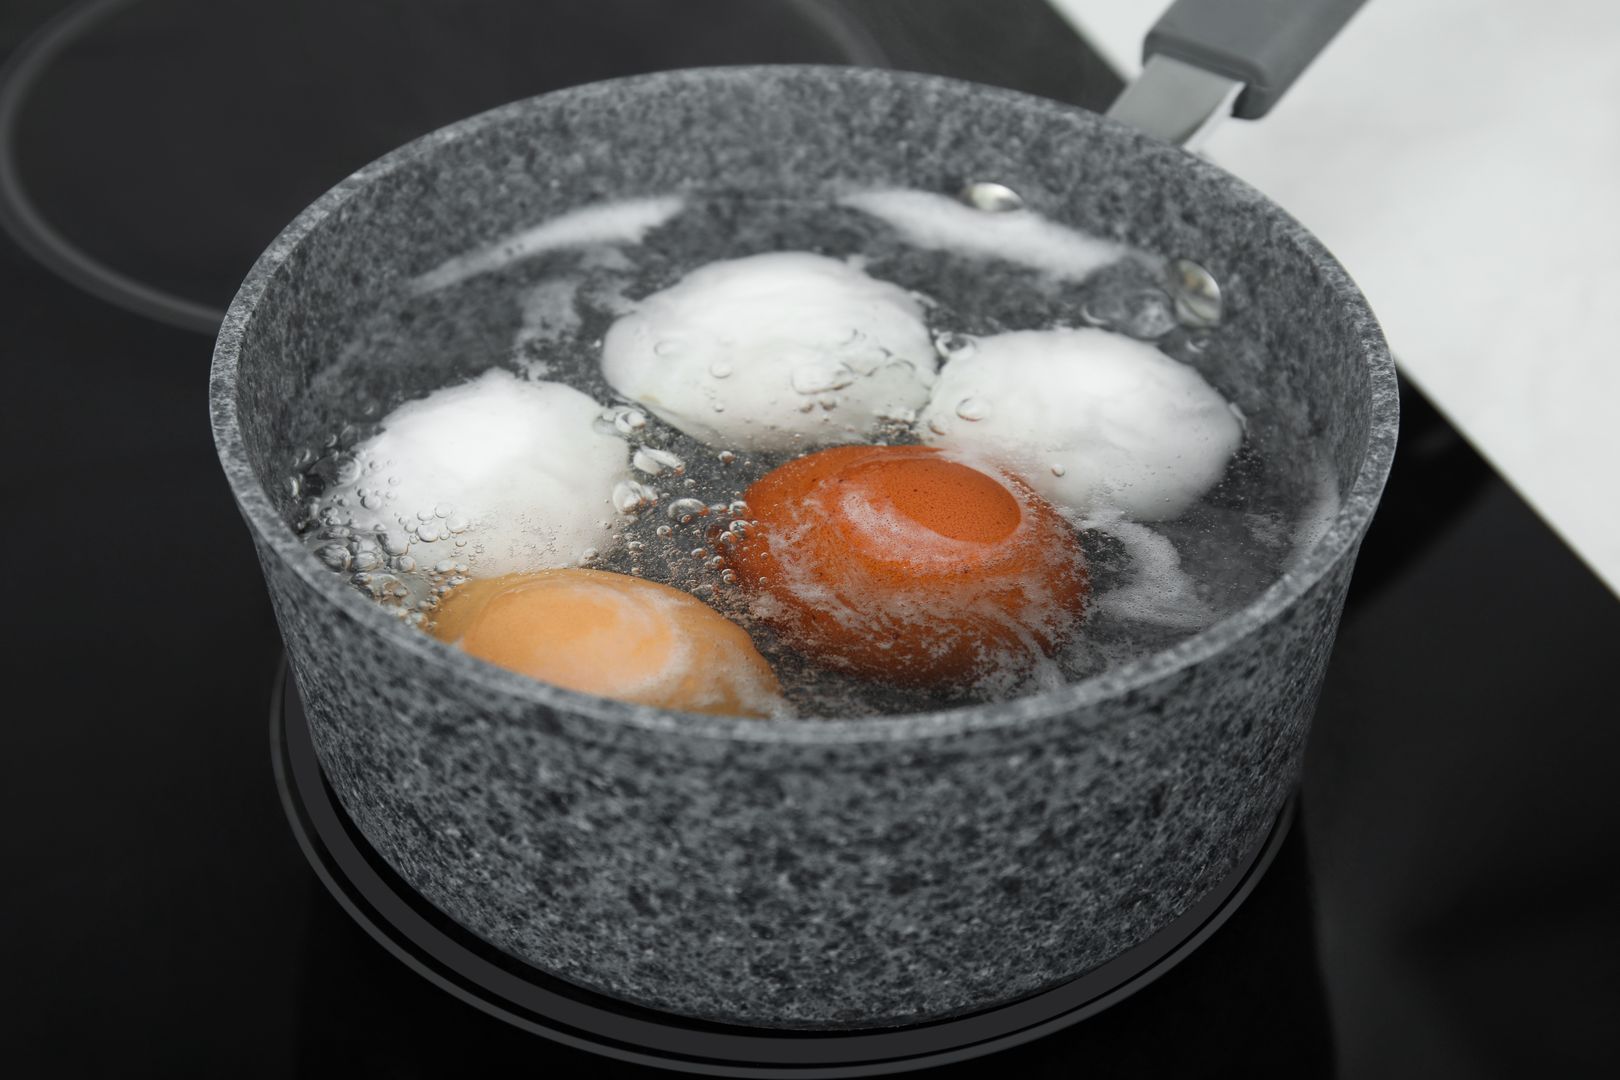 Wylewasz wodę po gotowaniu jajek? Nigdy więcej tego nie rób